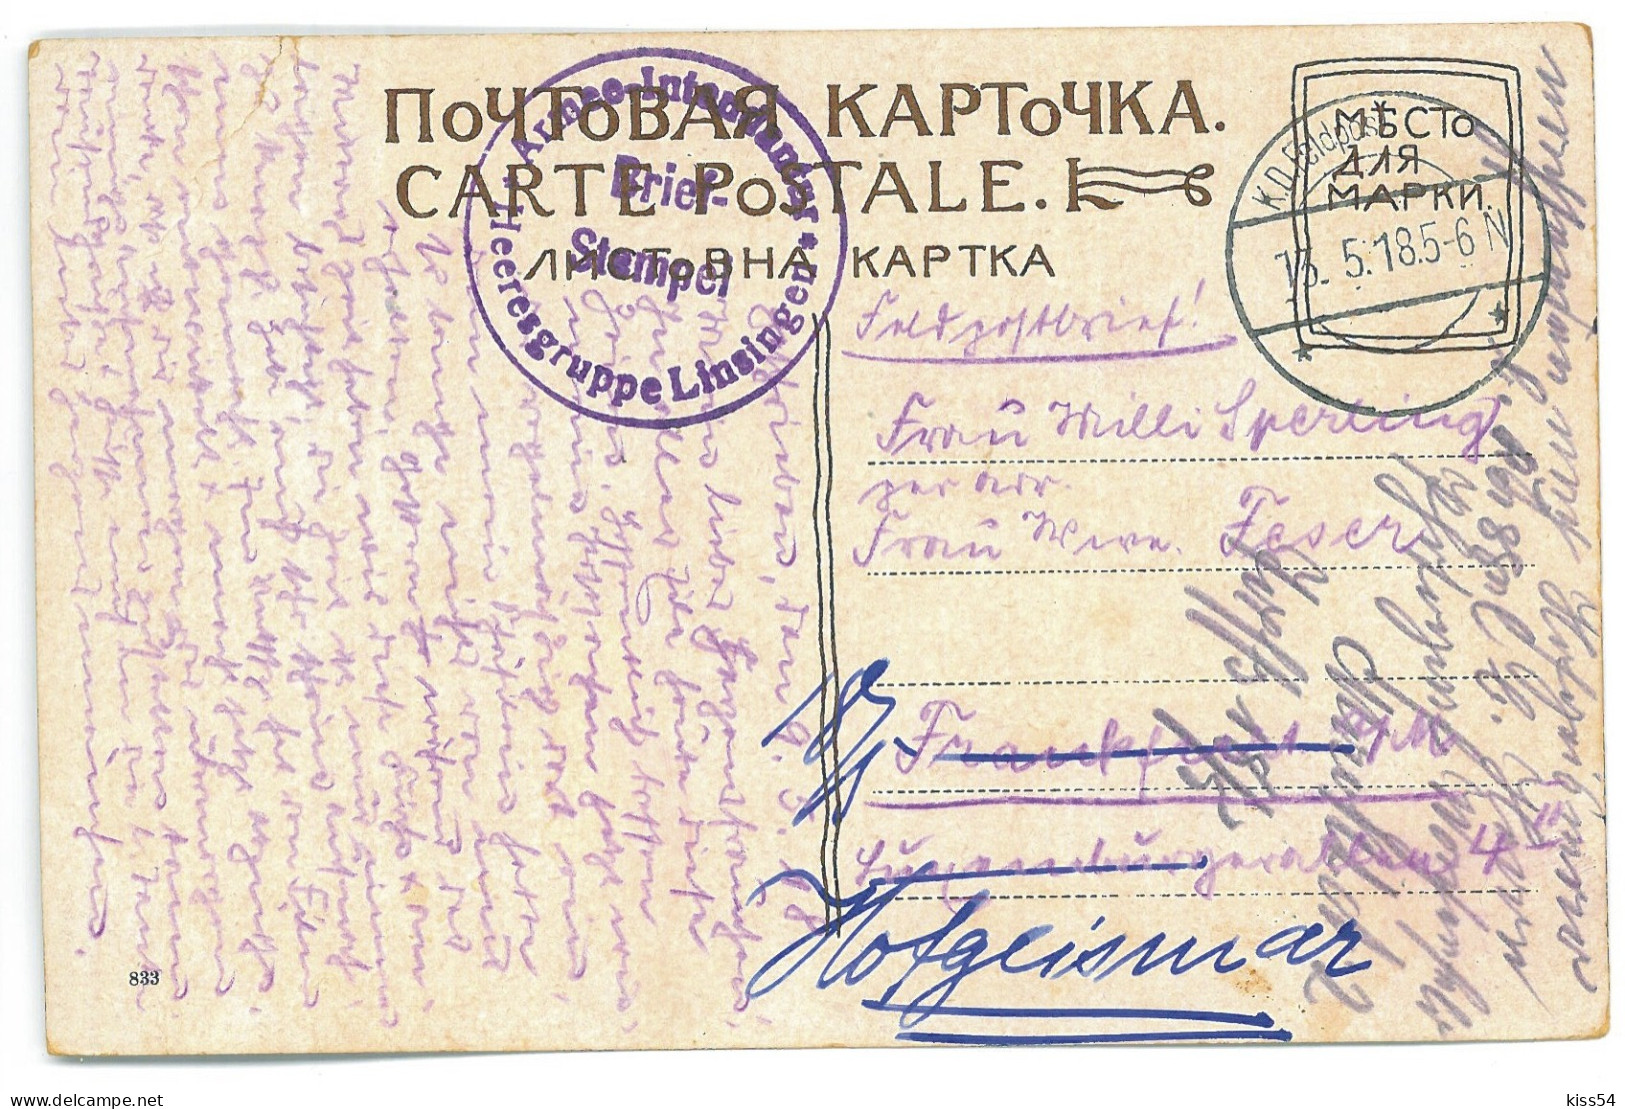 UK 52 - 20515 KIEV, Cathedral, Ukraine - Old Postcard, CENSOR - Used - 1918 - Ucraina